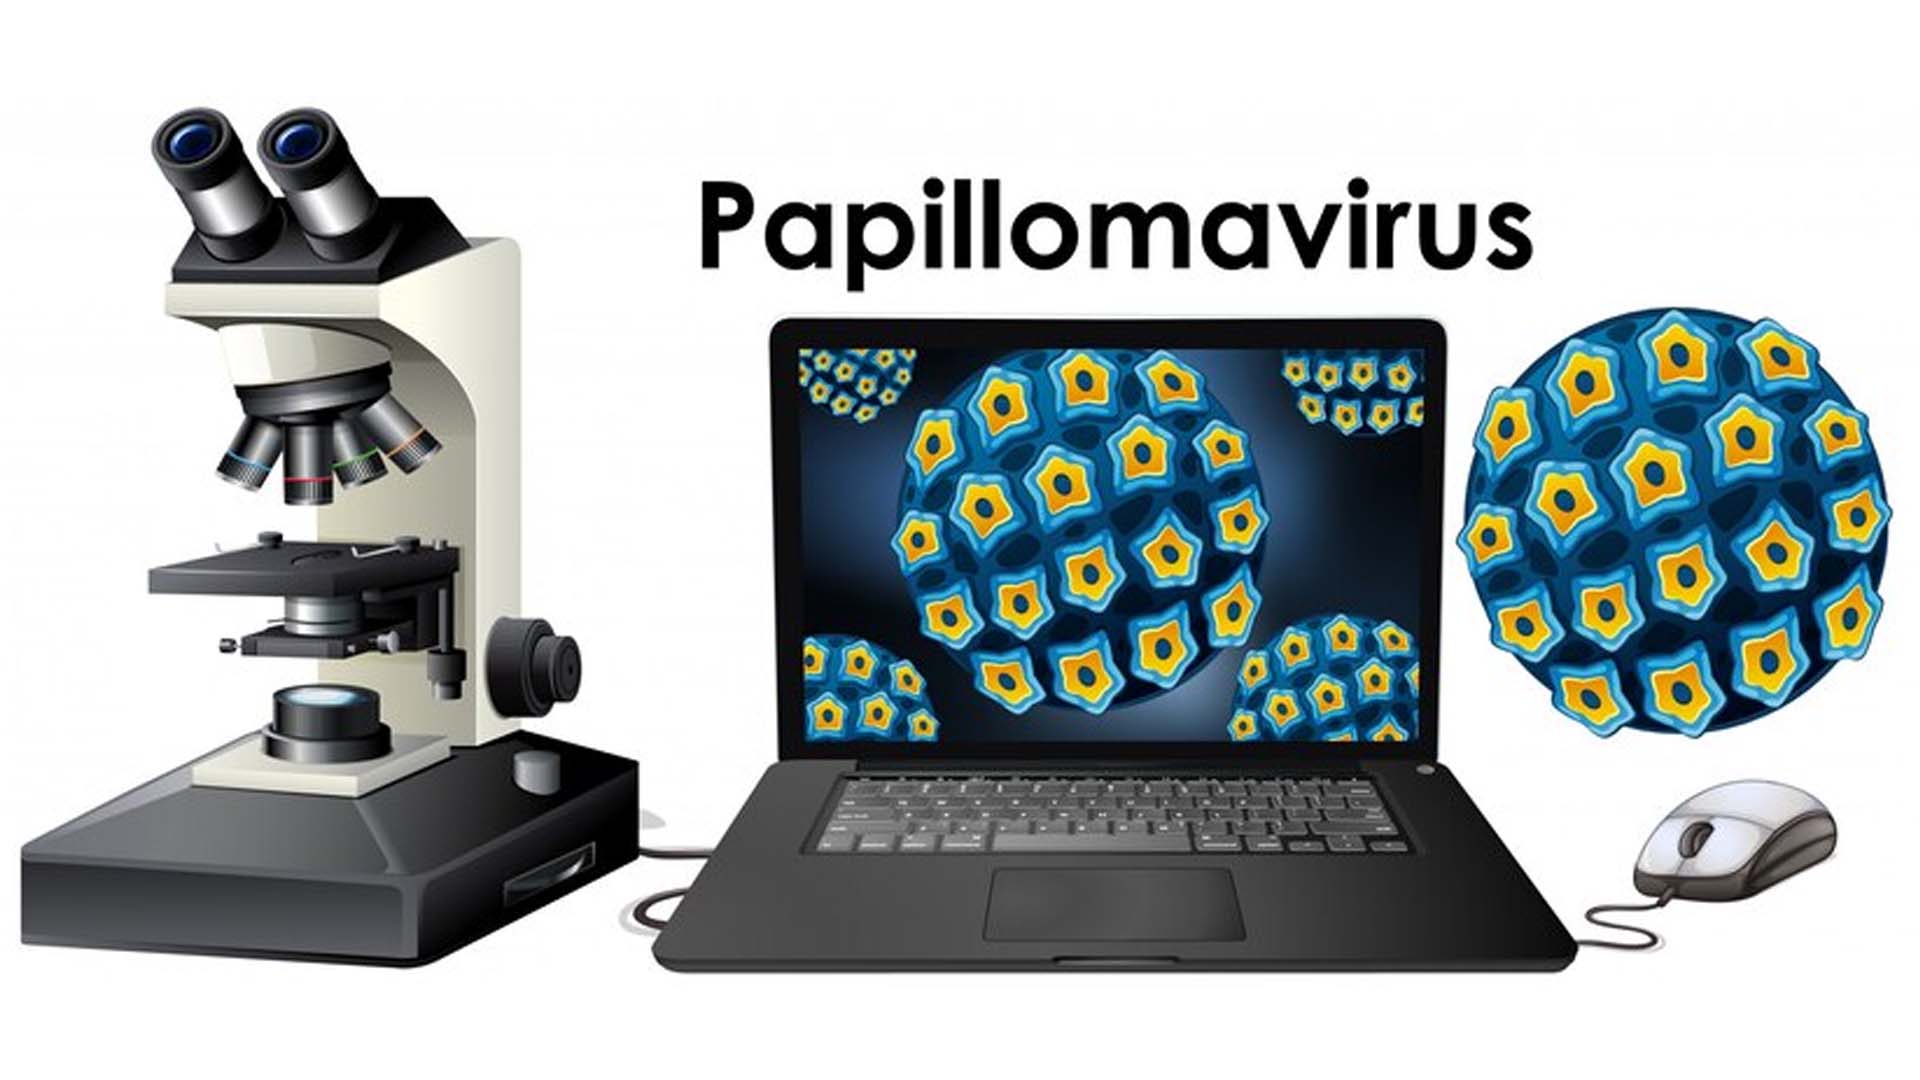 Human papillomavirus (HPV)